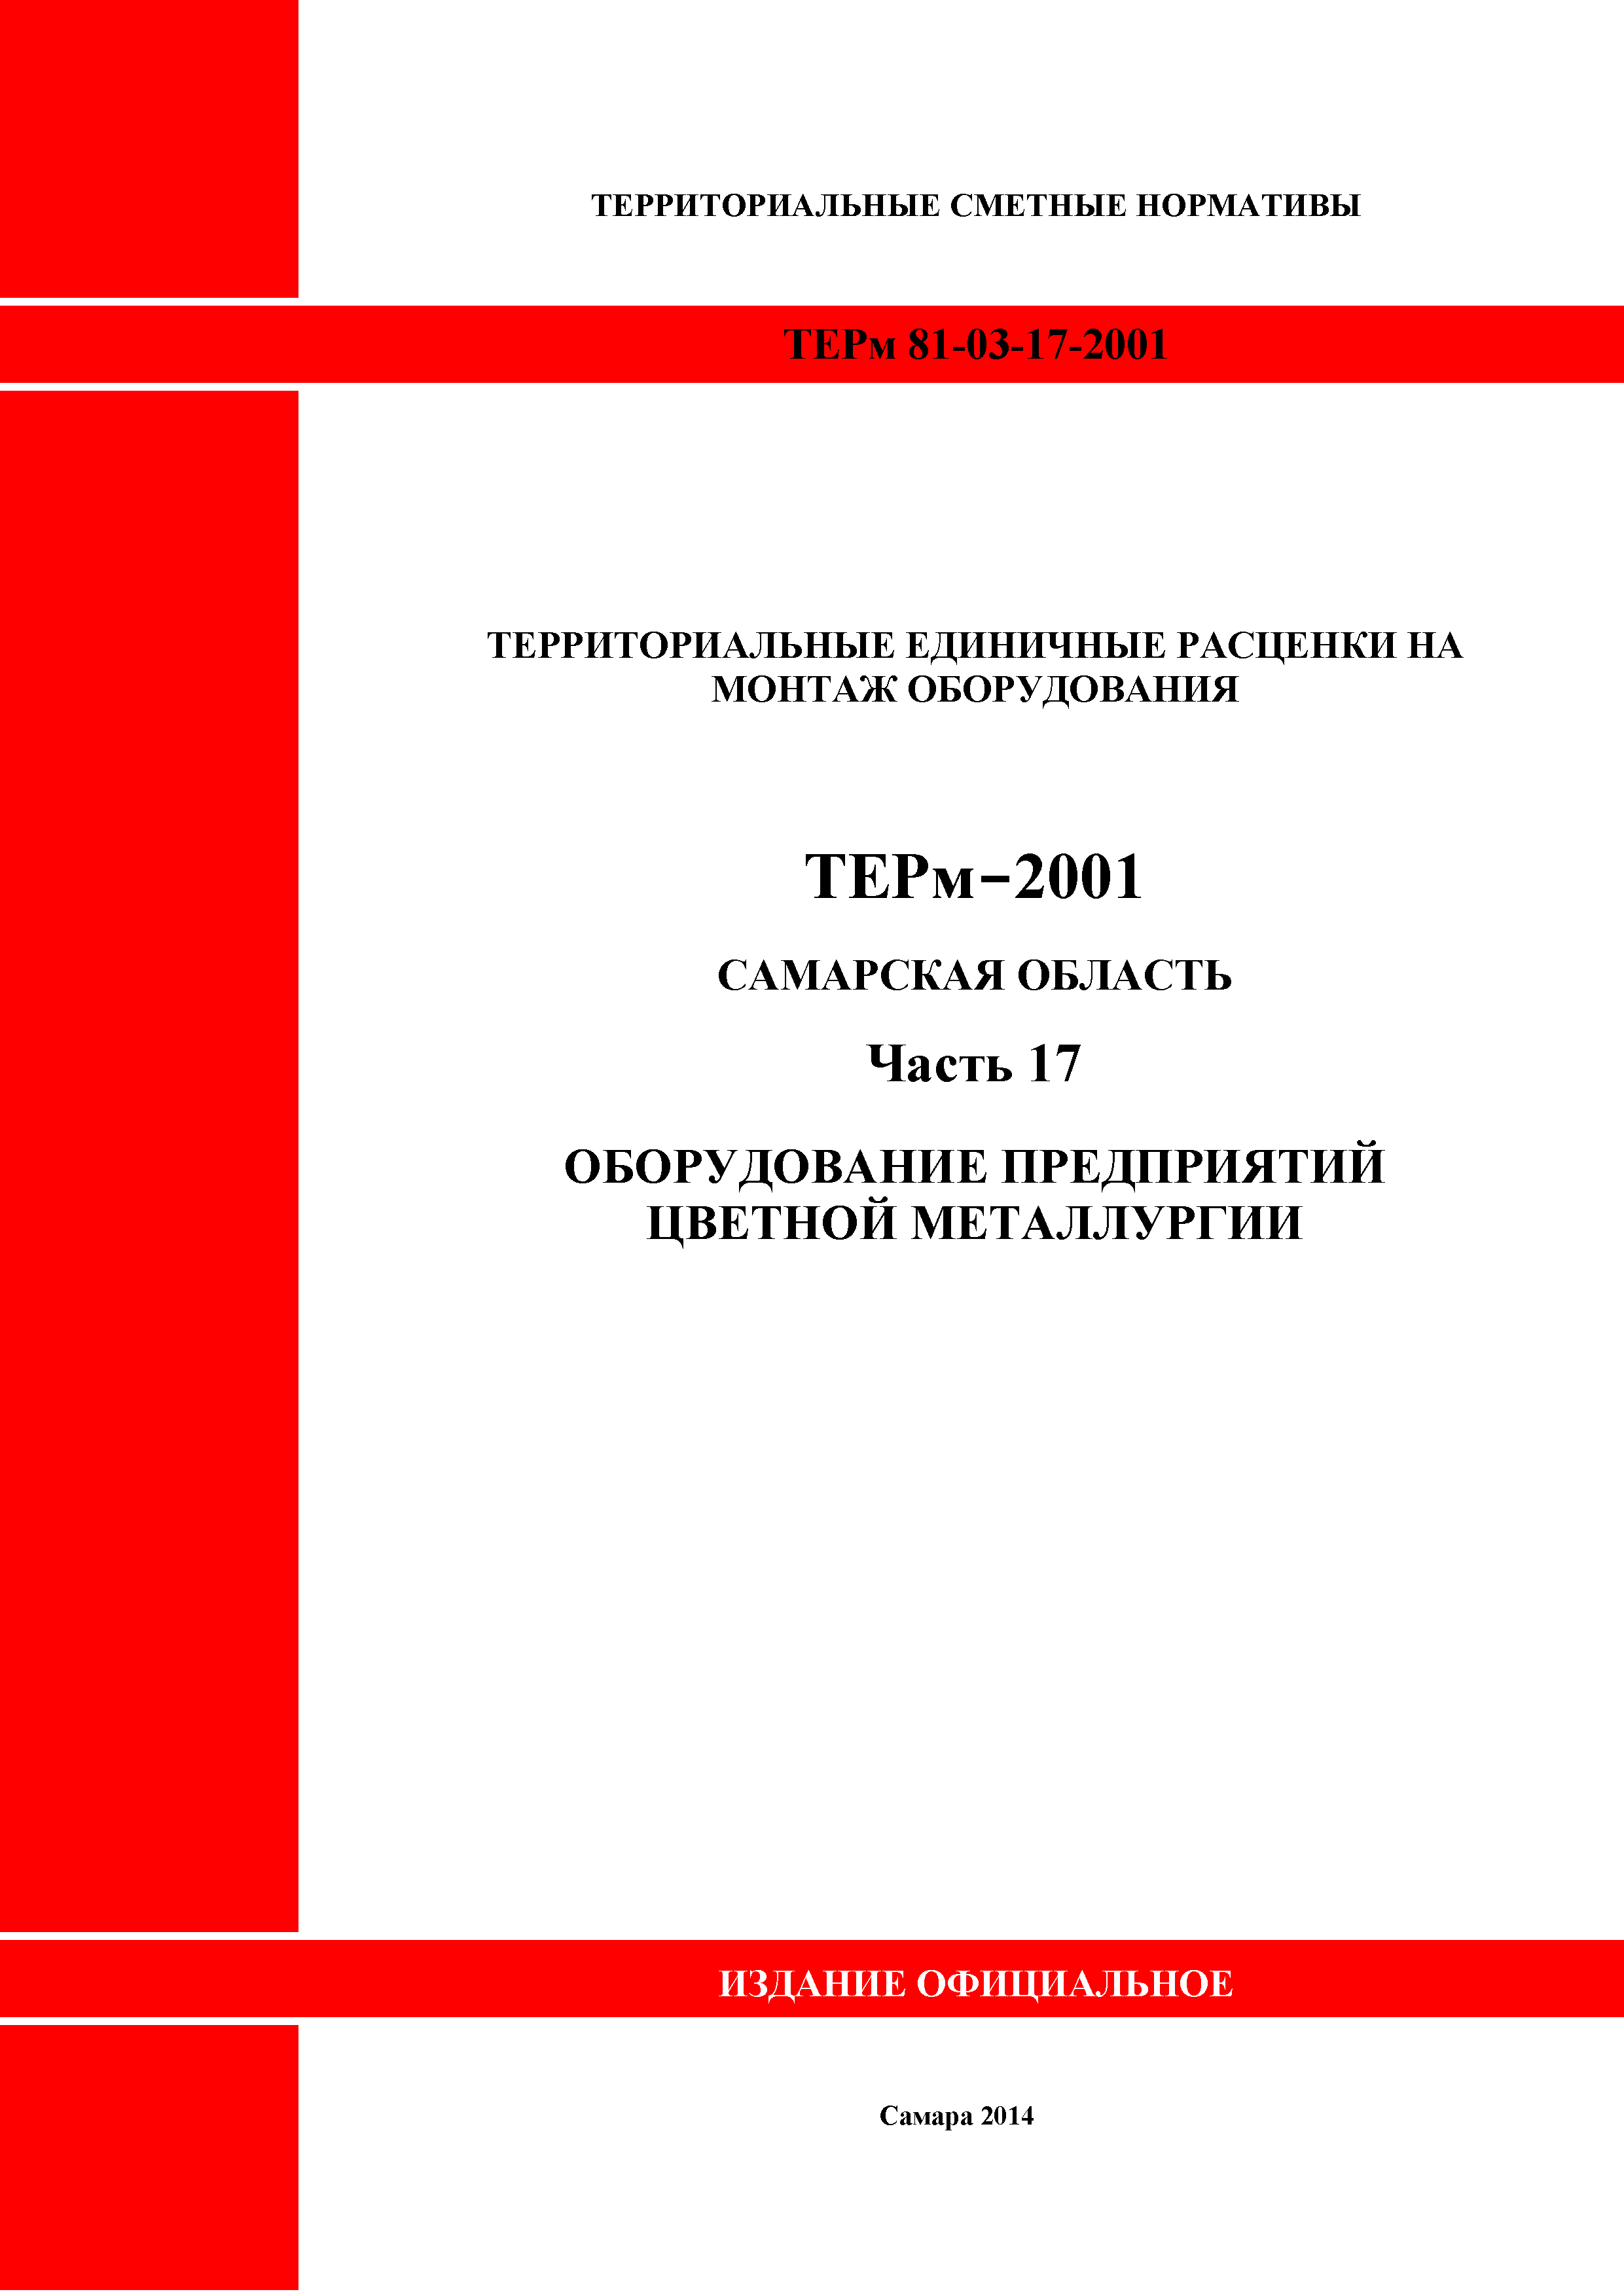 ТЕРм Самарская область 81-03-17-2001